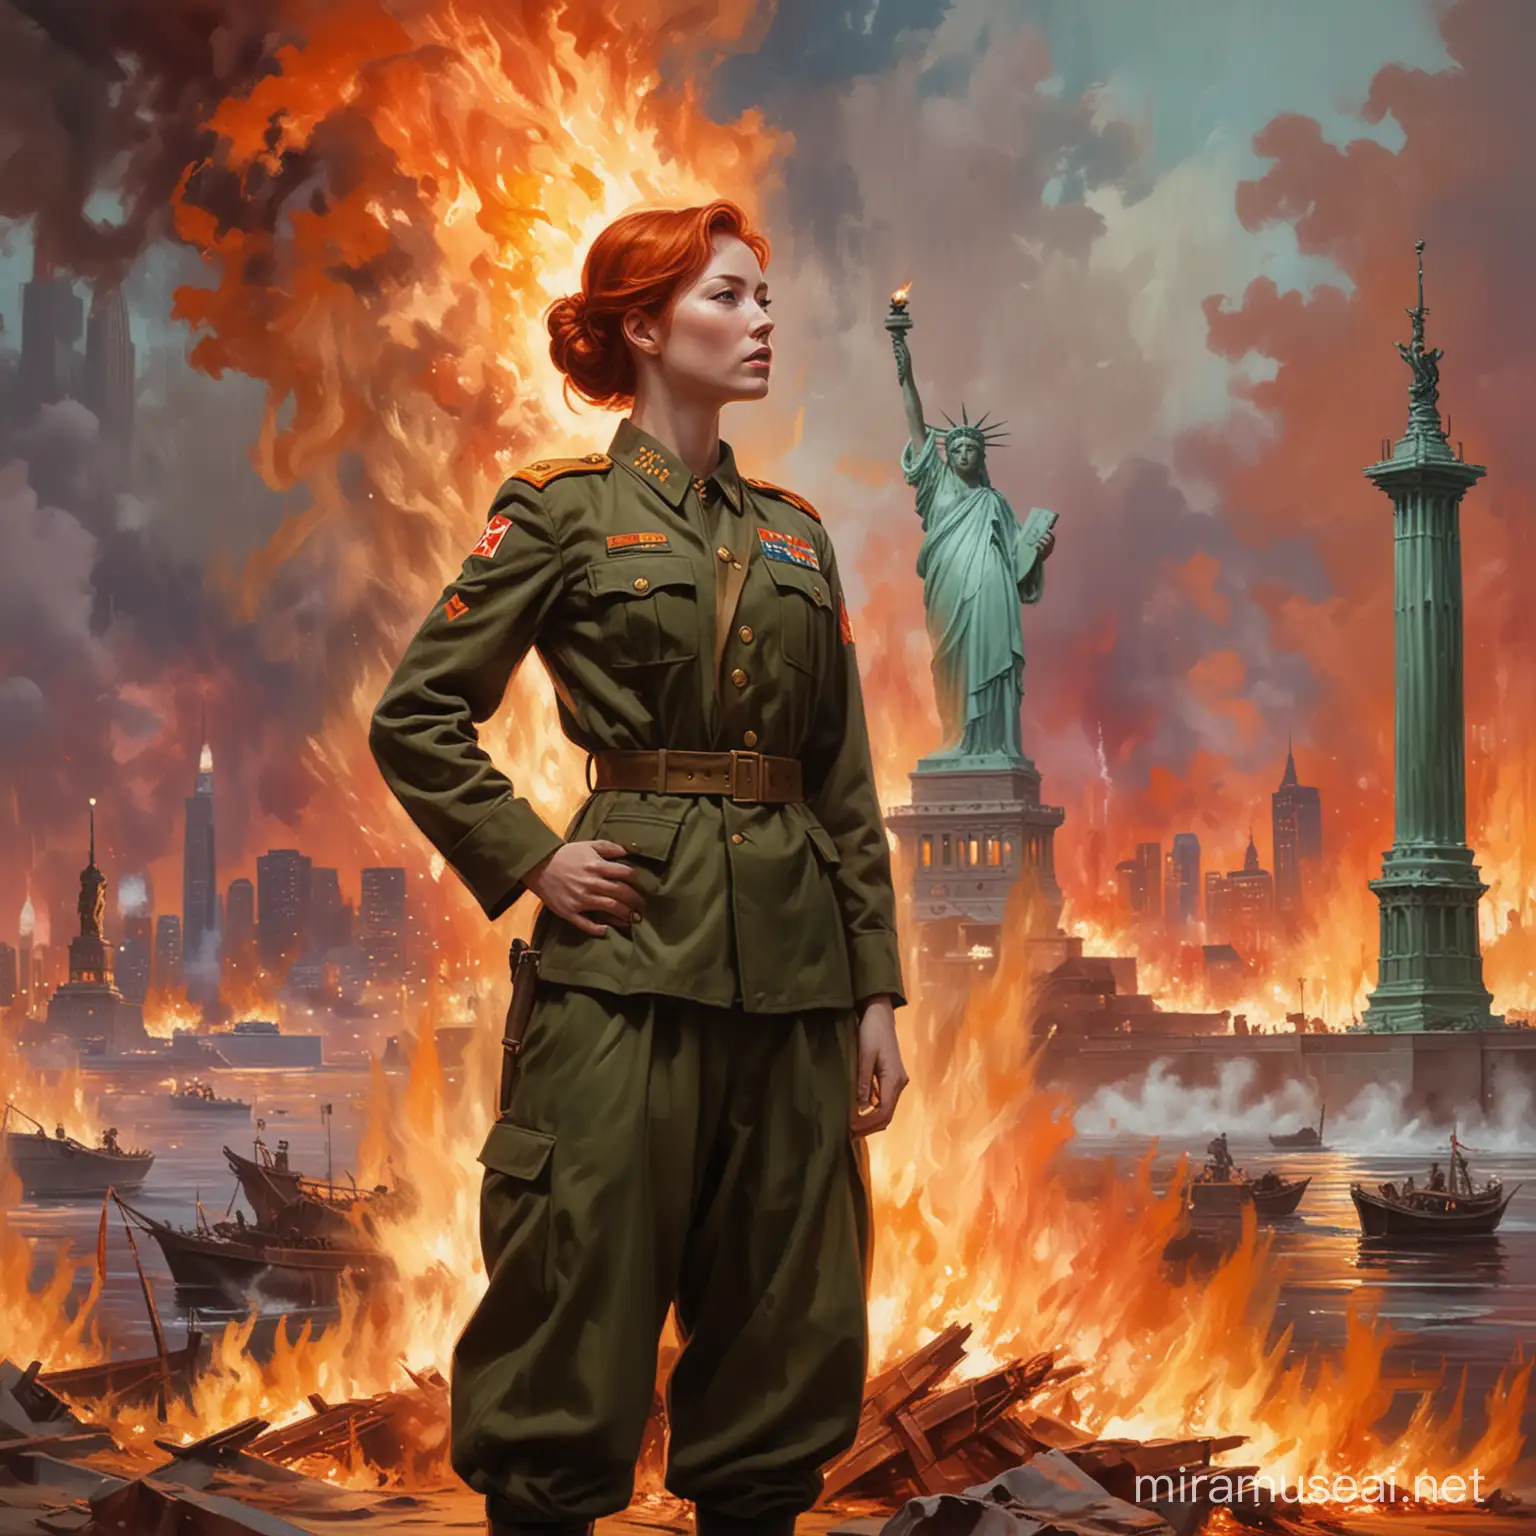 Peinture impressionniste femme rousse en tenue de soldats nord coréen debout, à l'arrière plan la statue de la liberté à l'intérieur des flammes, New York en feu.